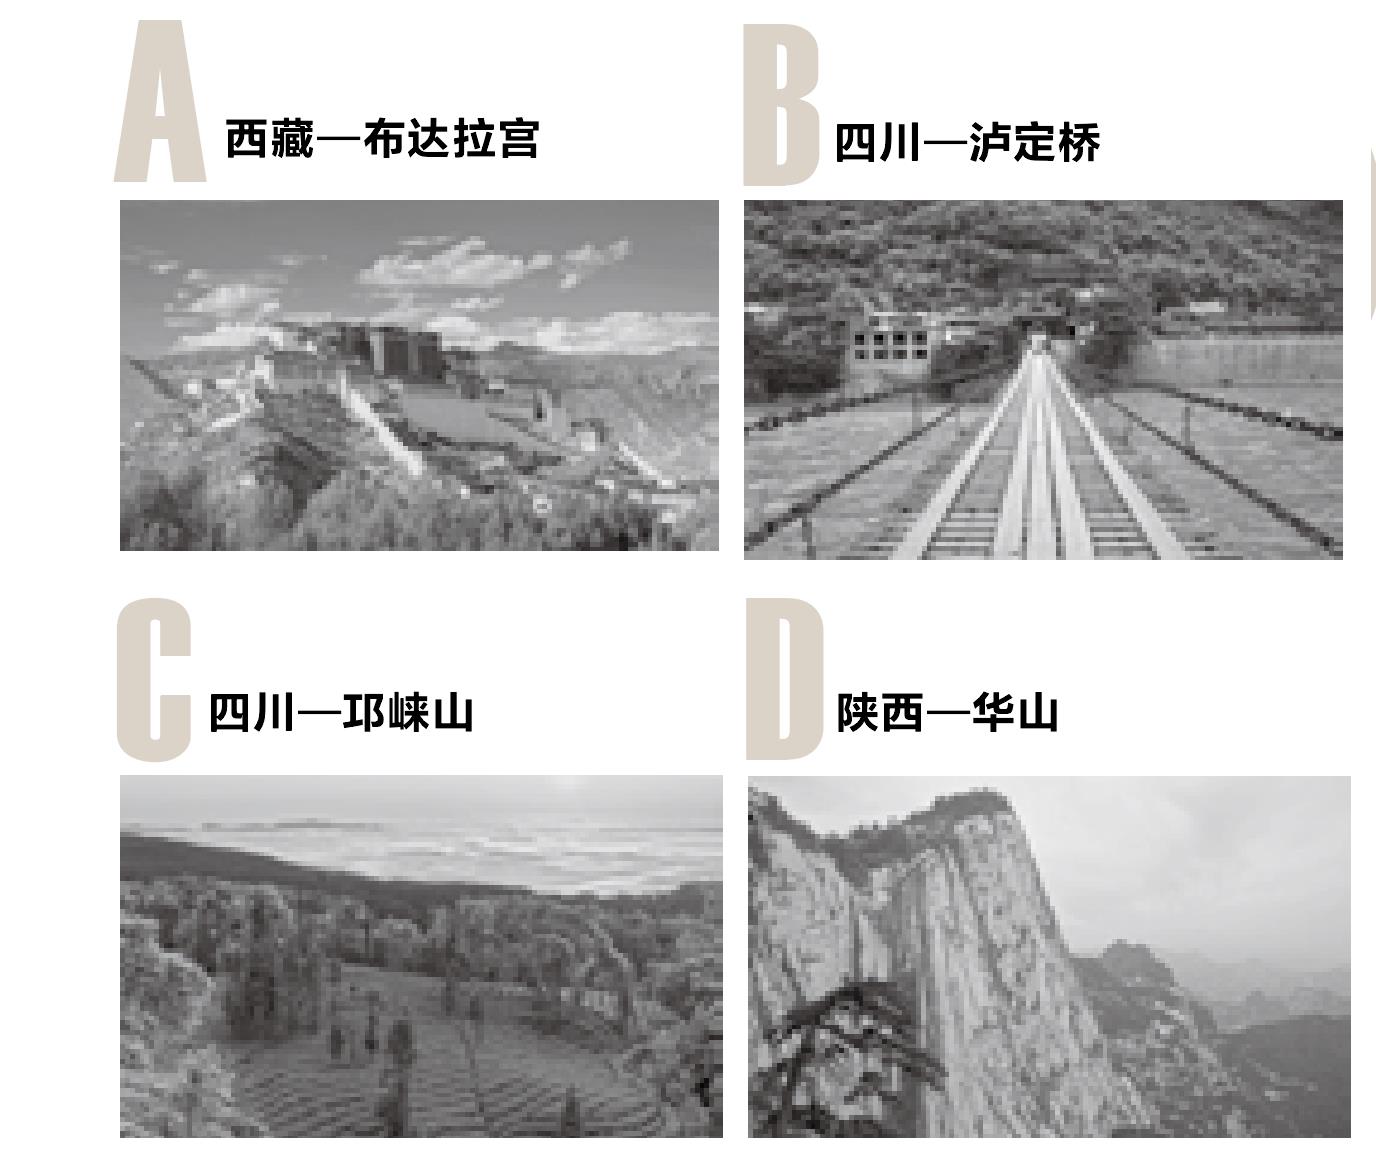 318国道被称为“中国人的景观大道”，途经无数优美风景，那么以下风景名胜不在318国道沿线的是?